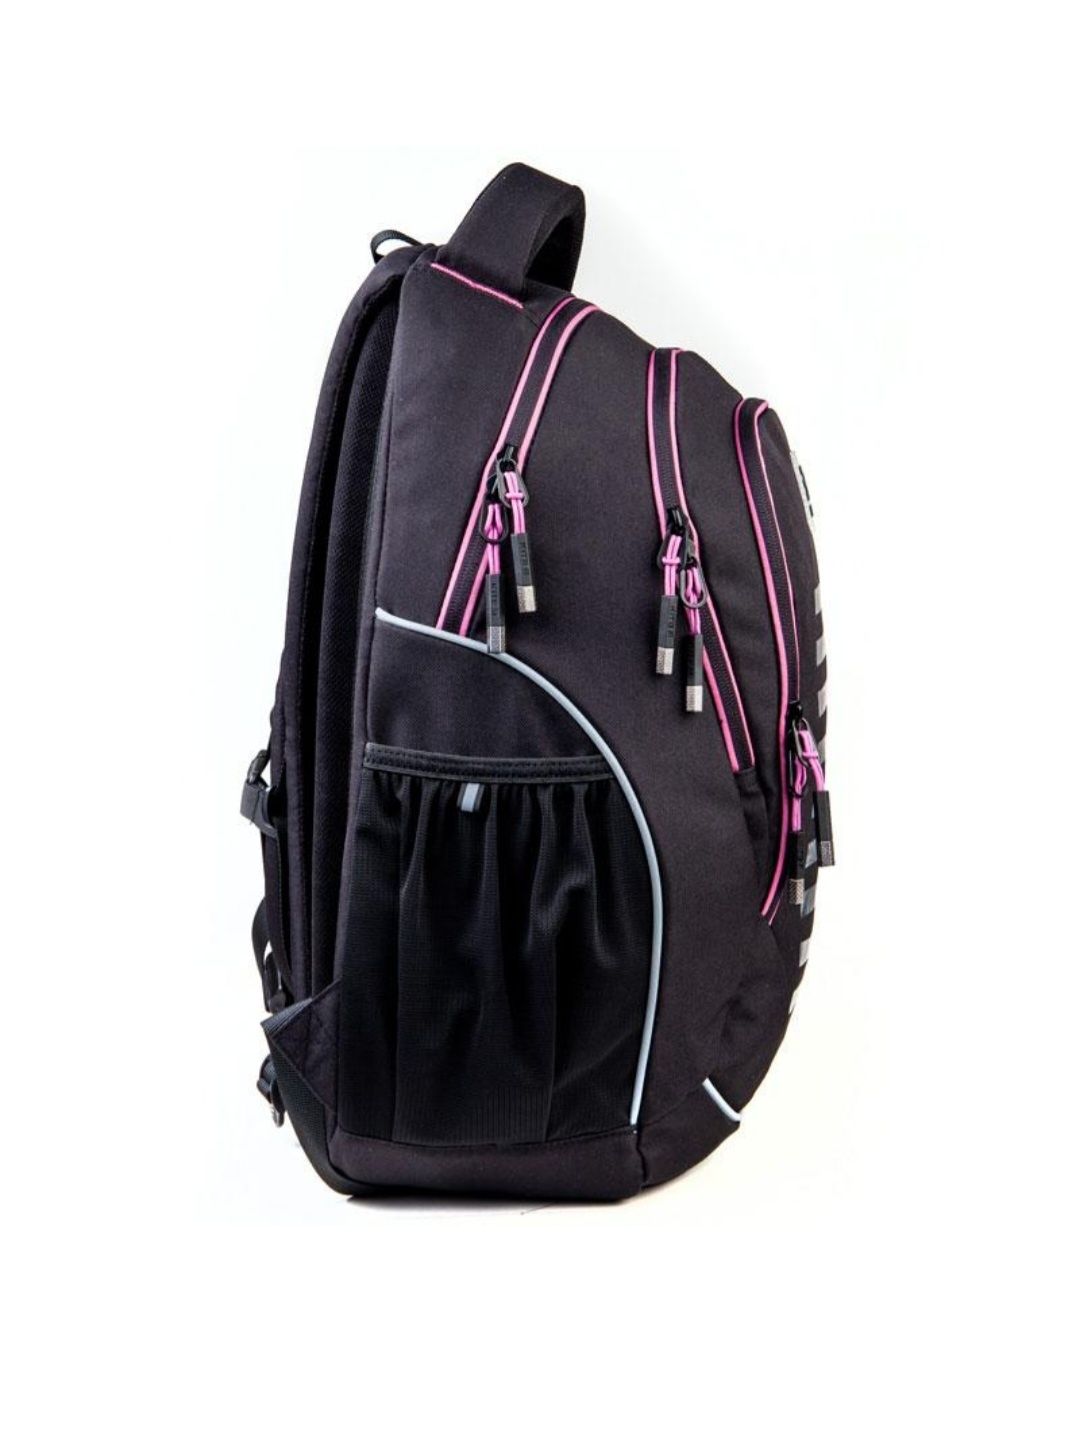 Шкільний рюкзак Kite для дівчинки-підлітка